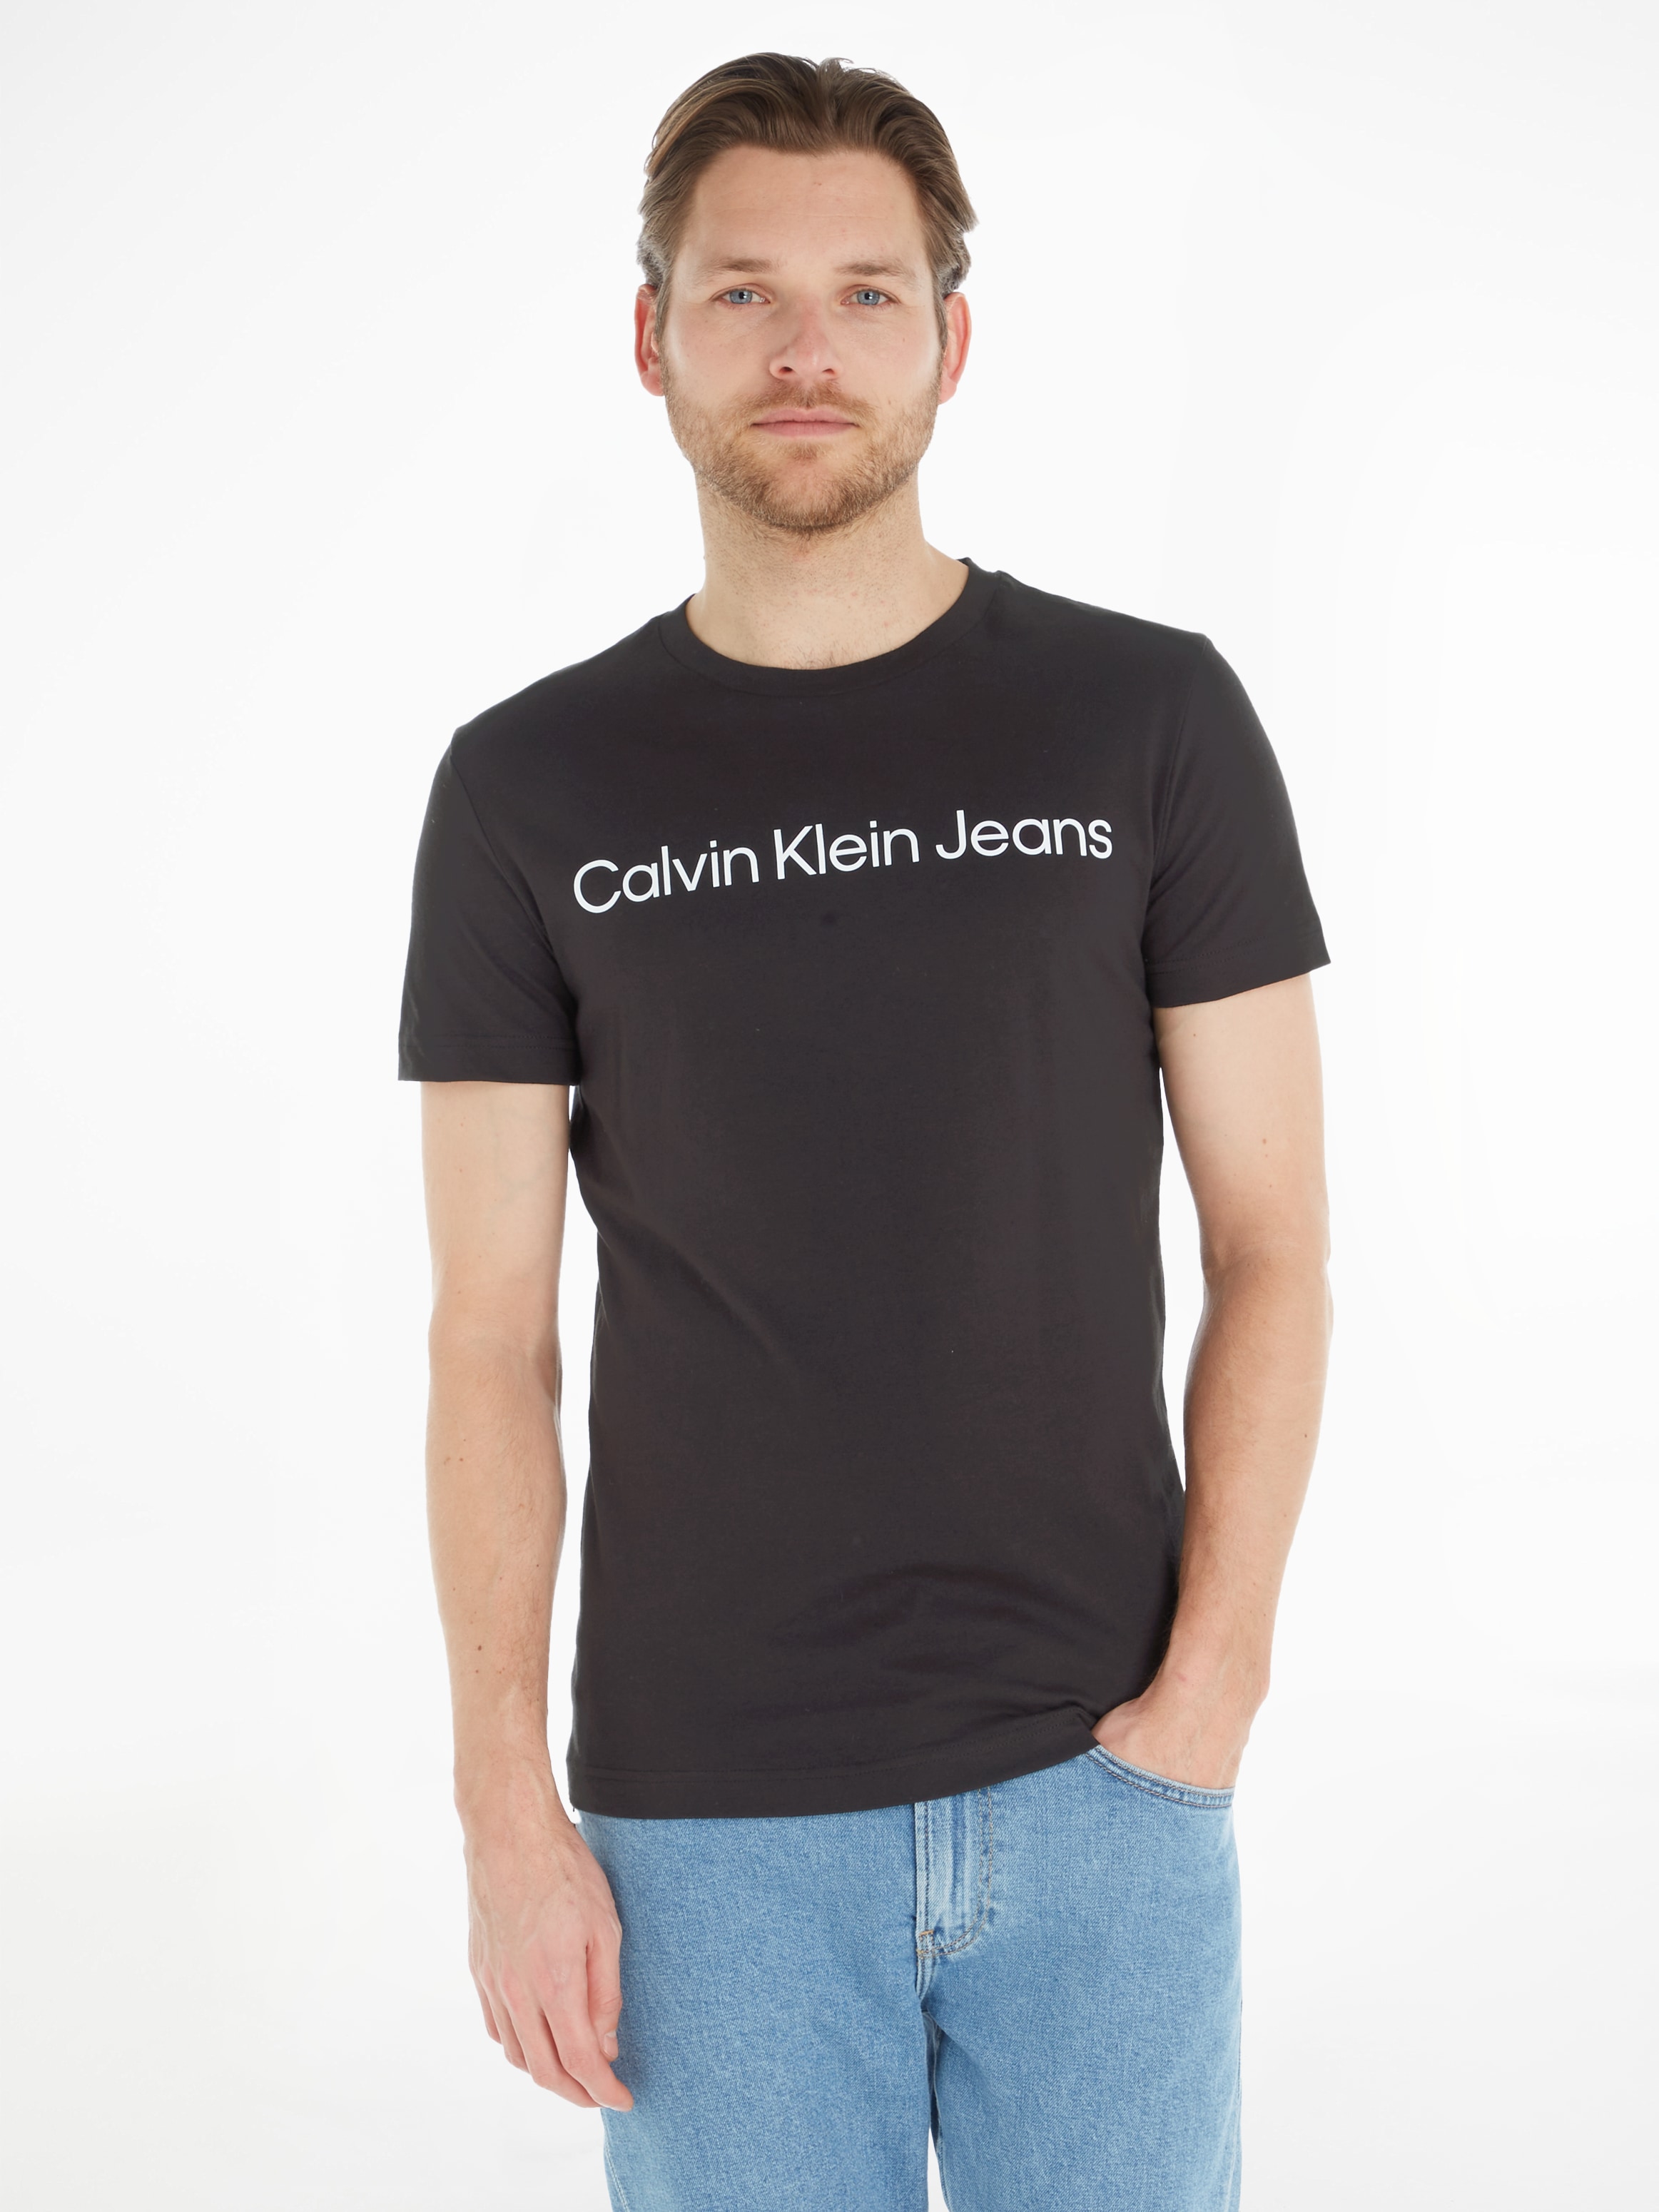 Calvin Klein Jeans BAUR T-Shirt kaufen TEE« | INSTITUTIONAL ▷ LOGO SLIM »CORE